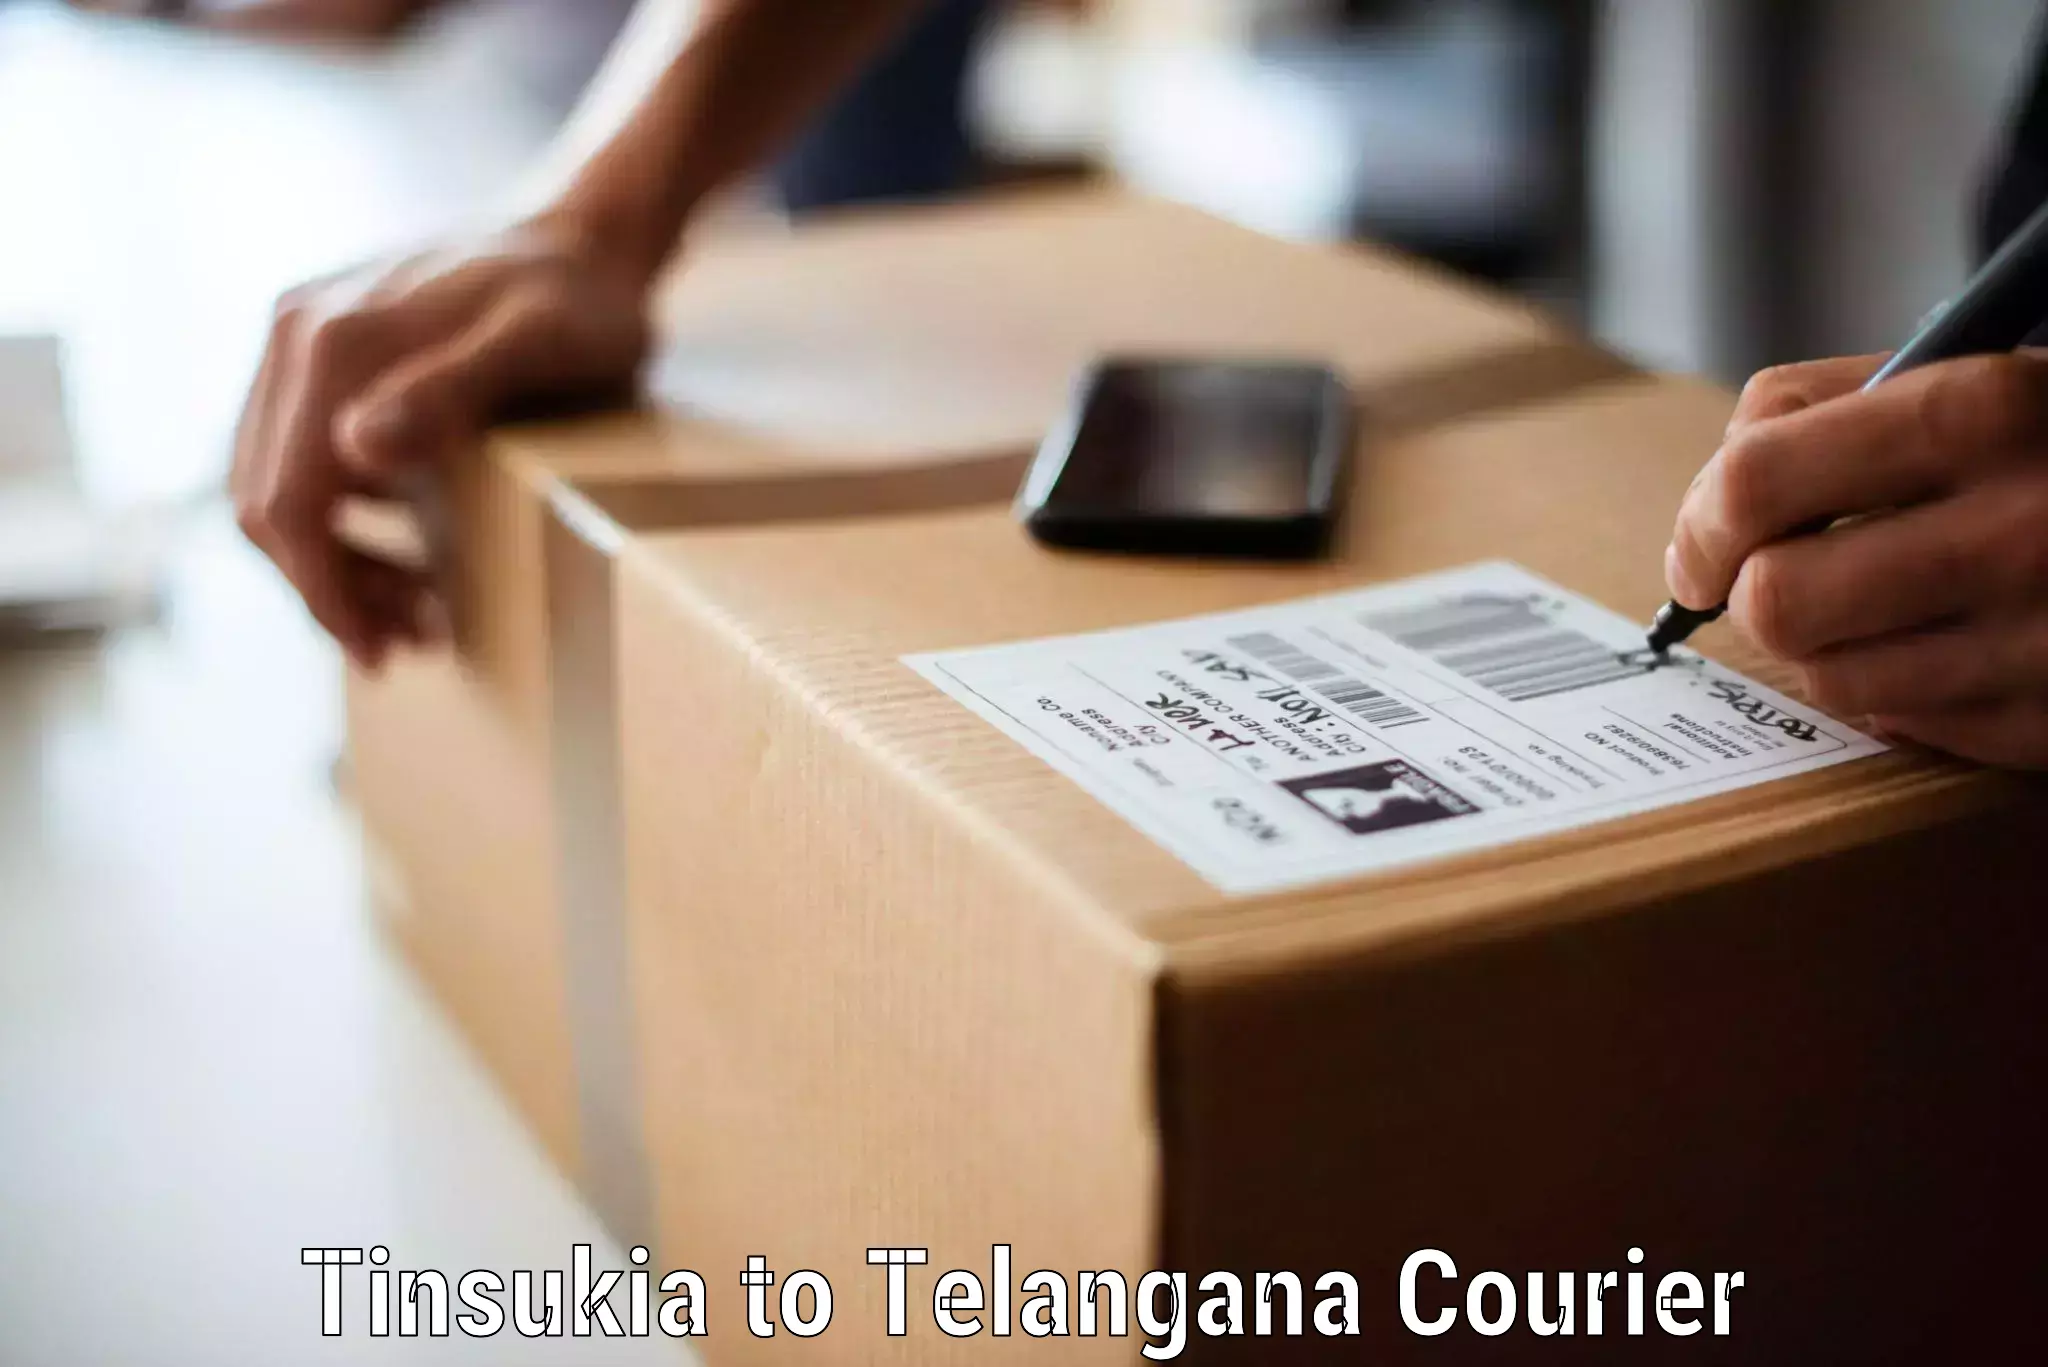 Home goods moving company in Tinsukia to Bhuvanagiri